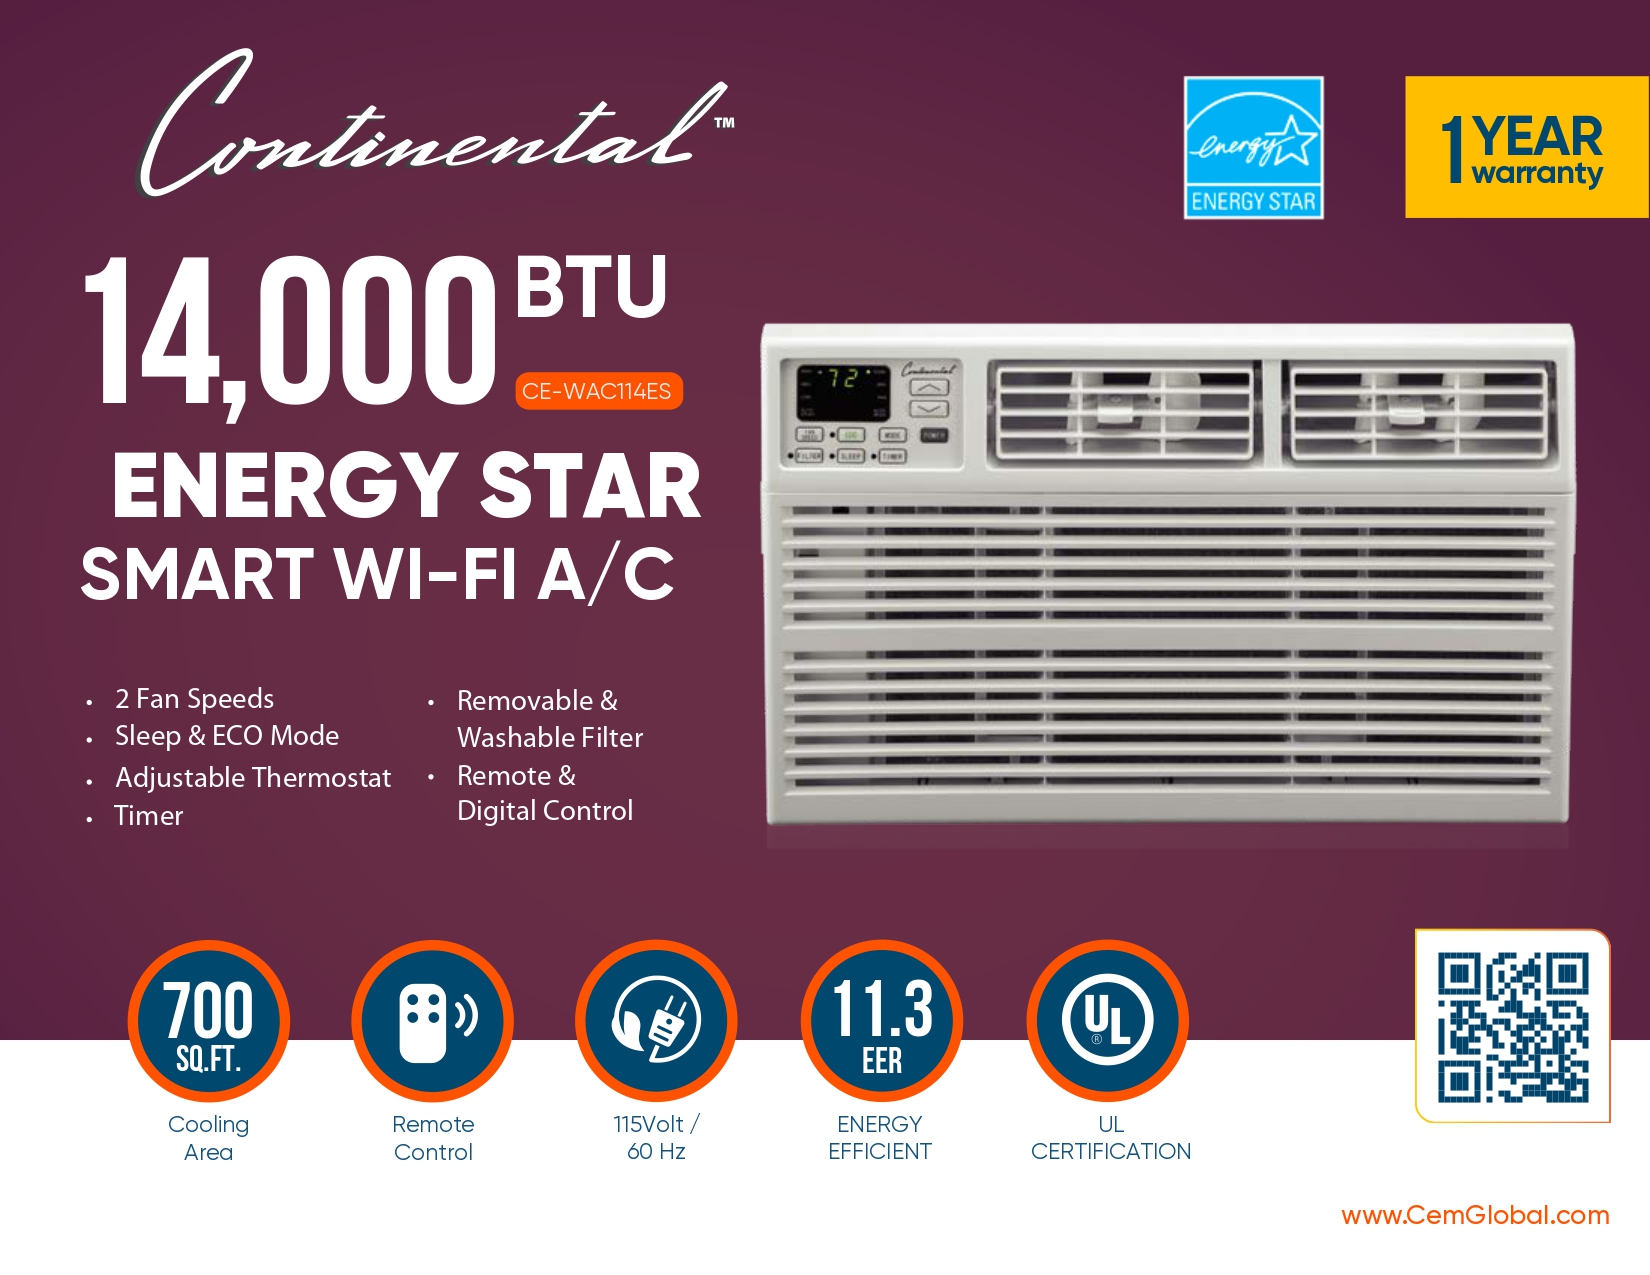 14,000 BTU ENERGY STAR SMART WI-FI A/C